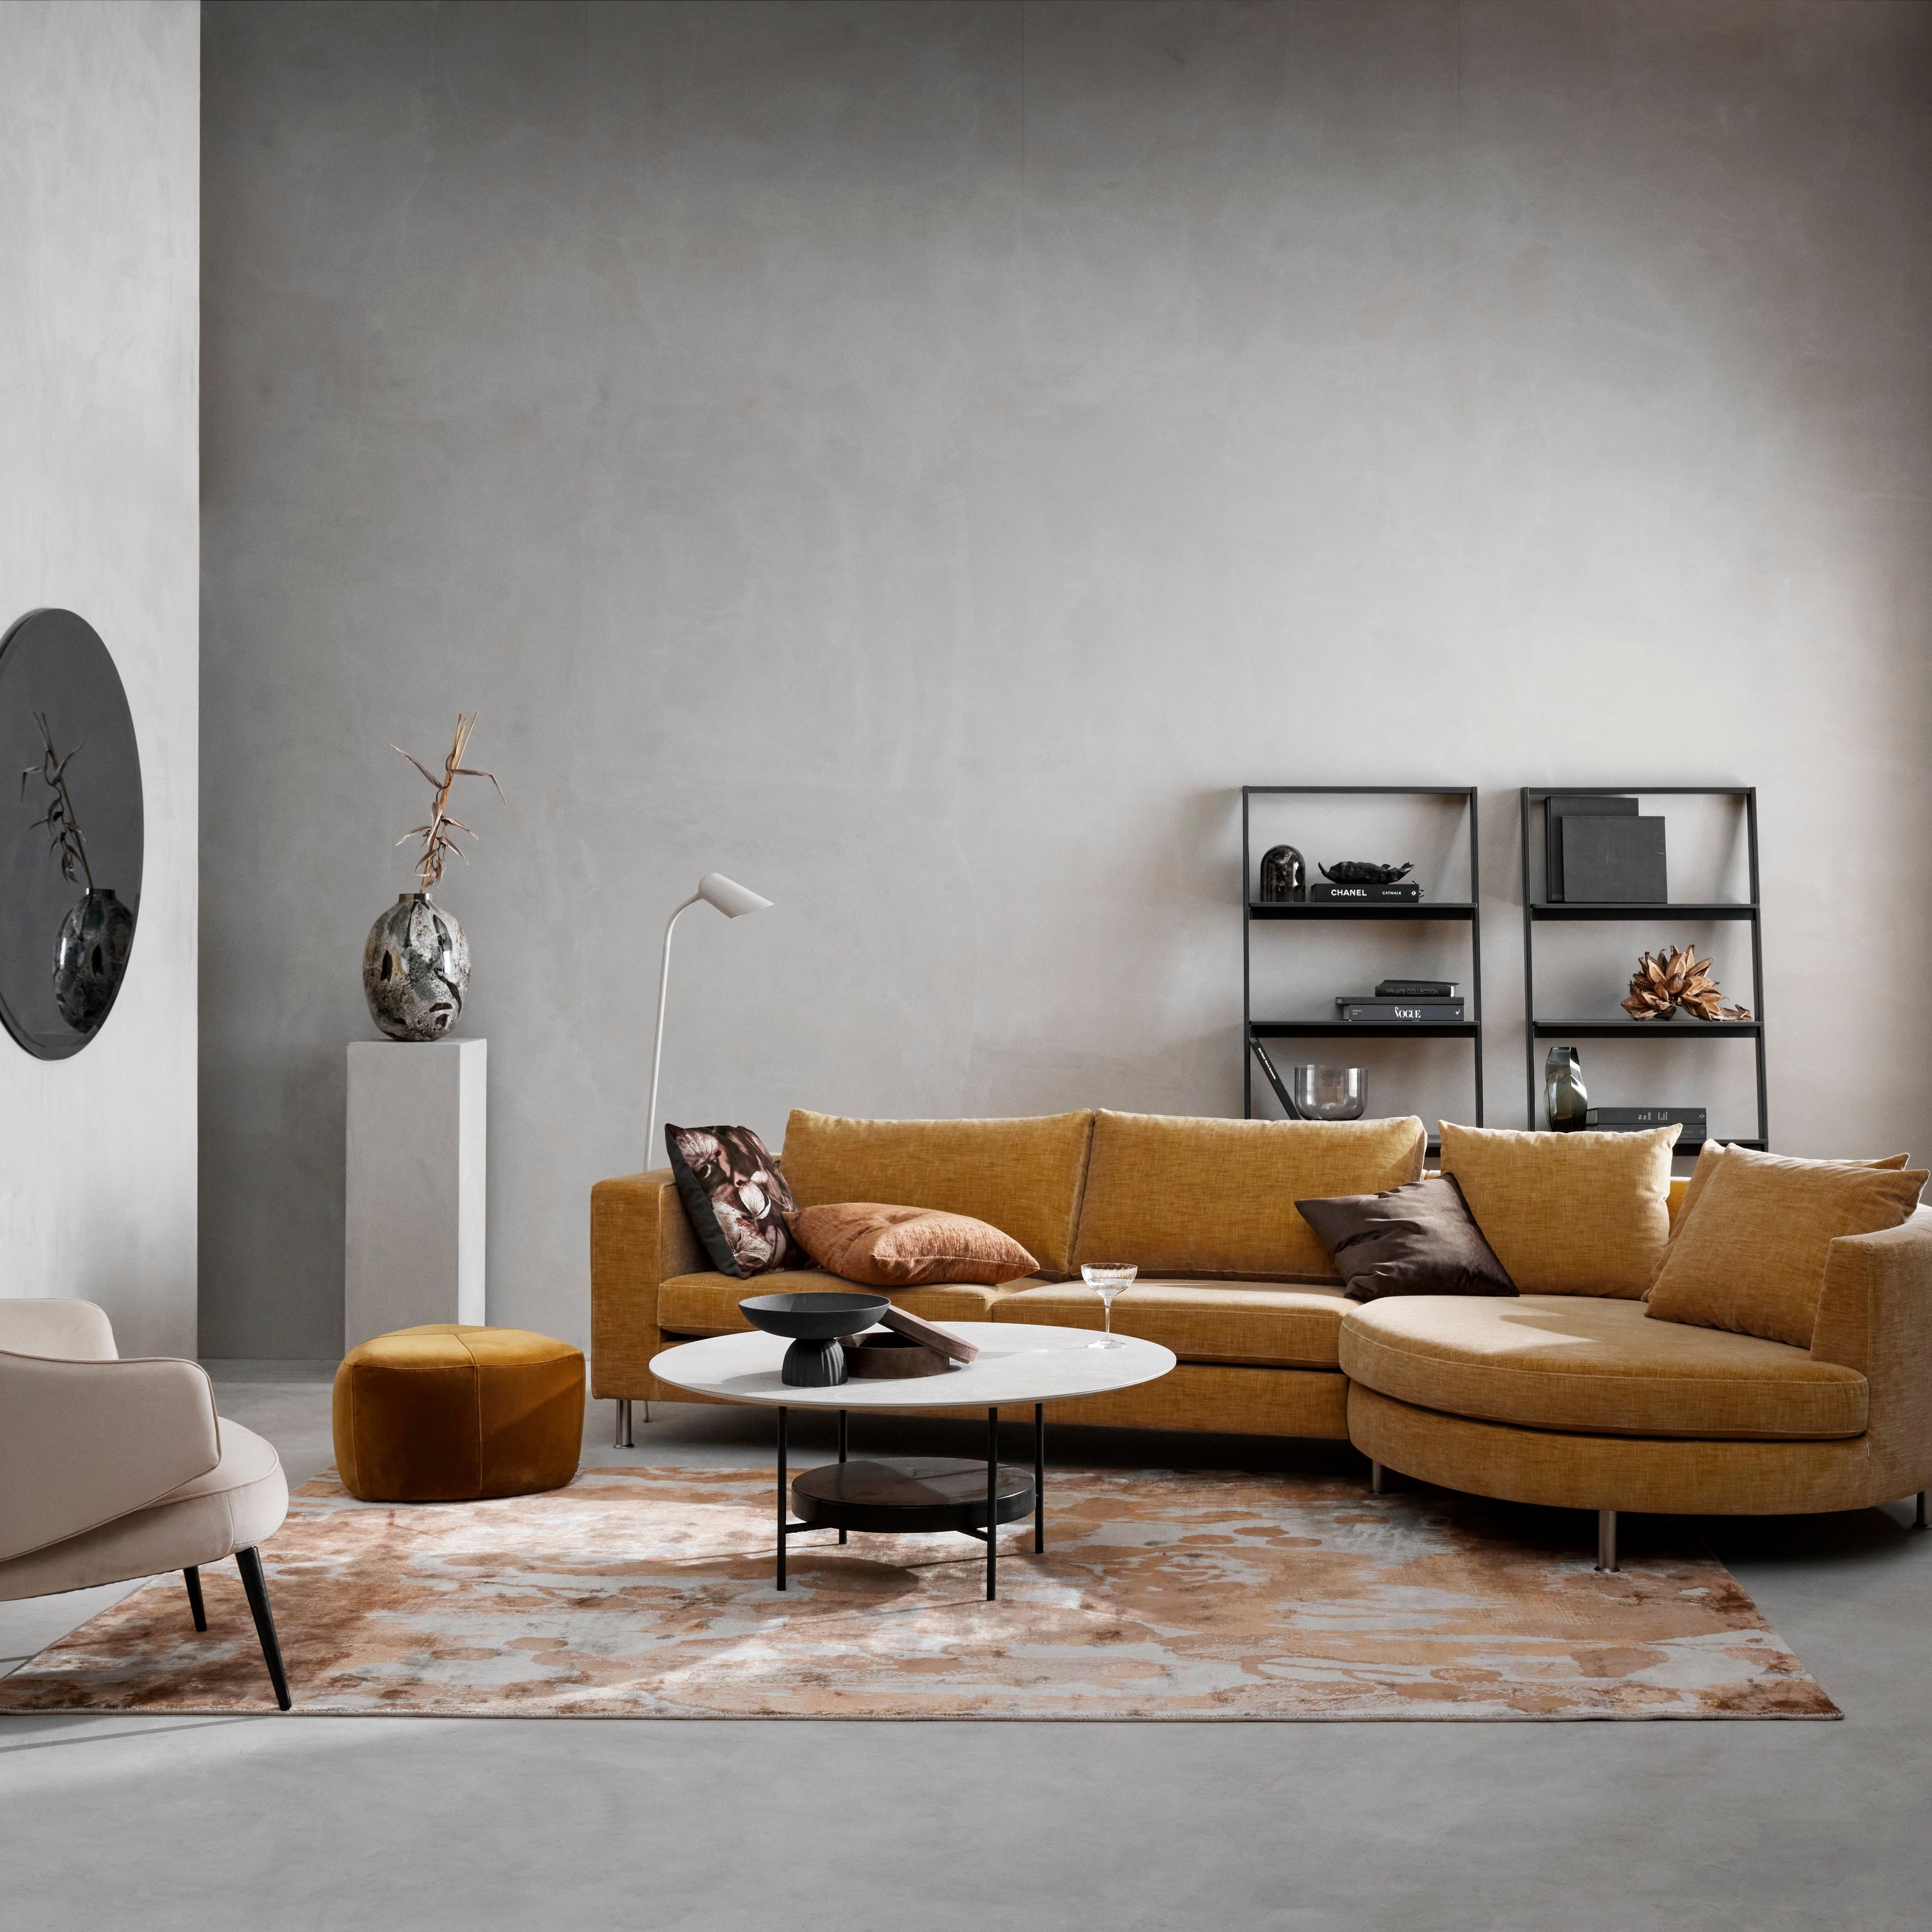 Sala moderna con sofá modular color mostaza, silla beige, alfombra con estampado y decoración minimalista.